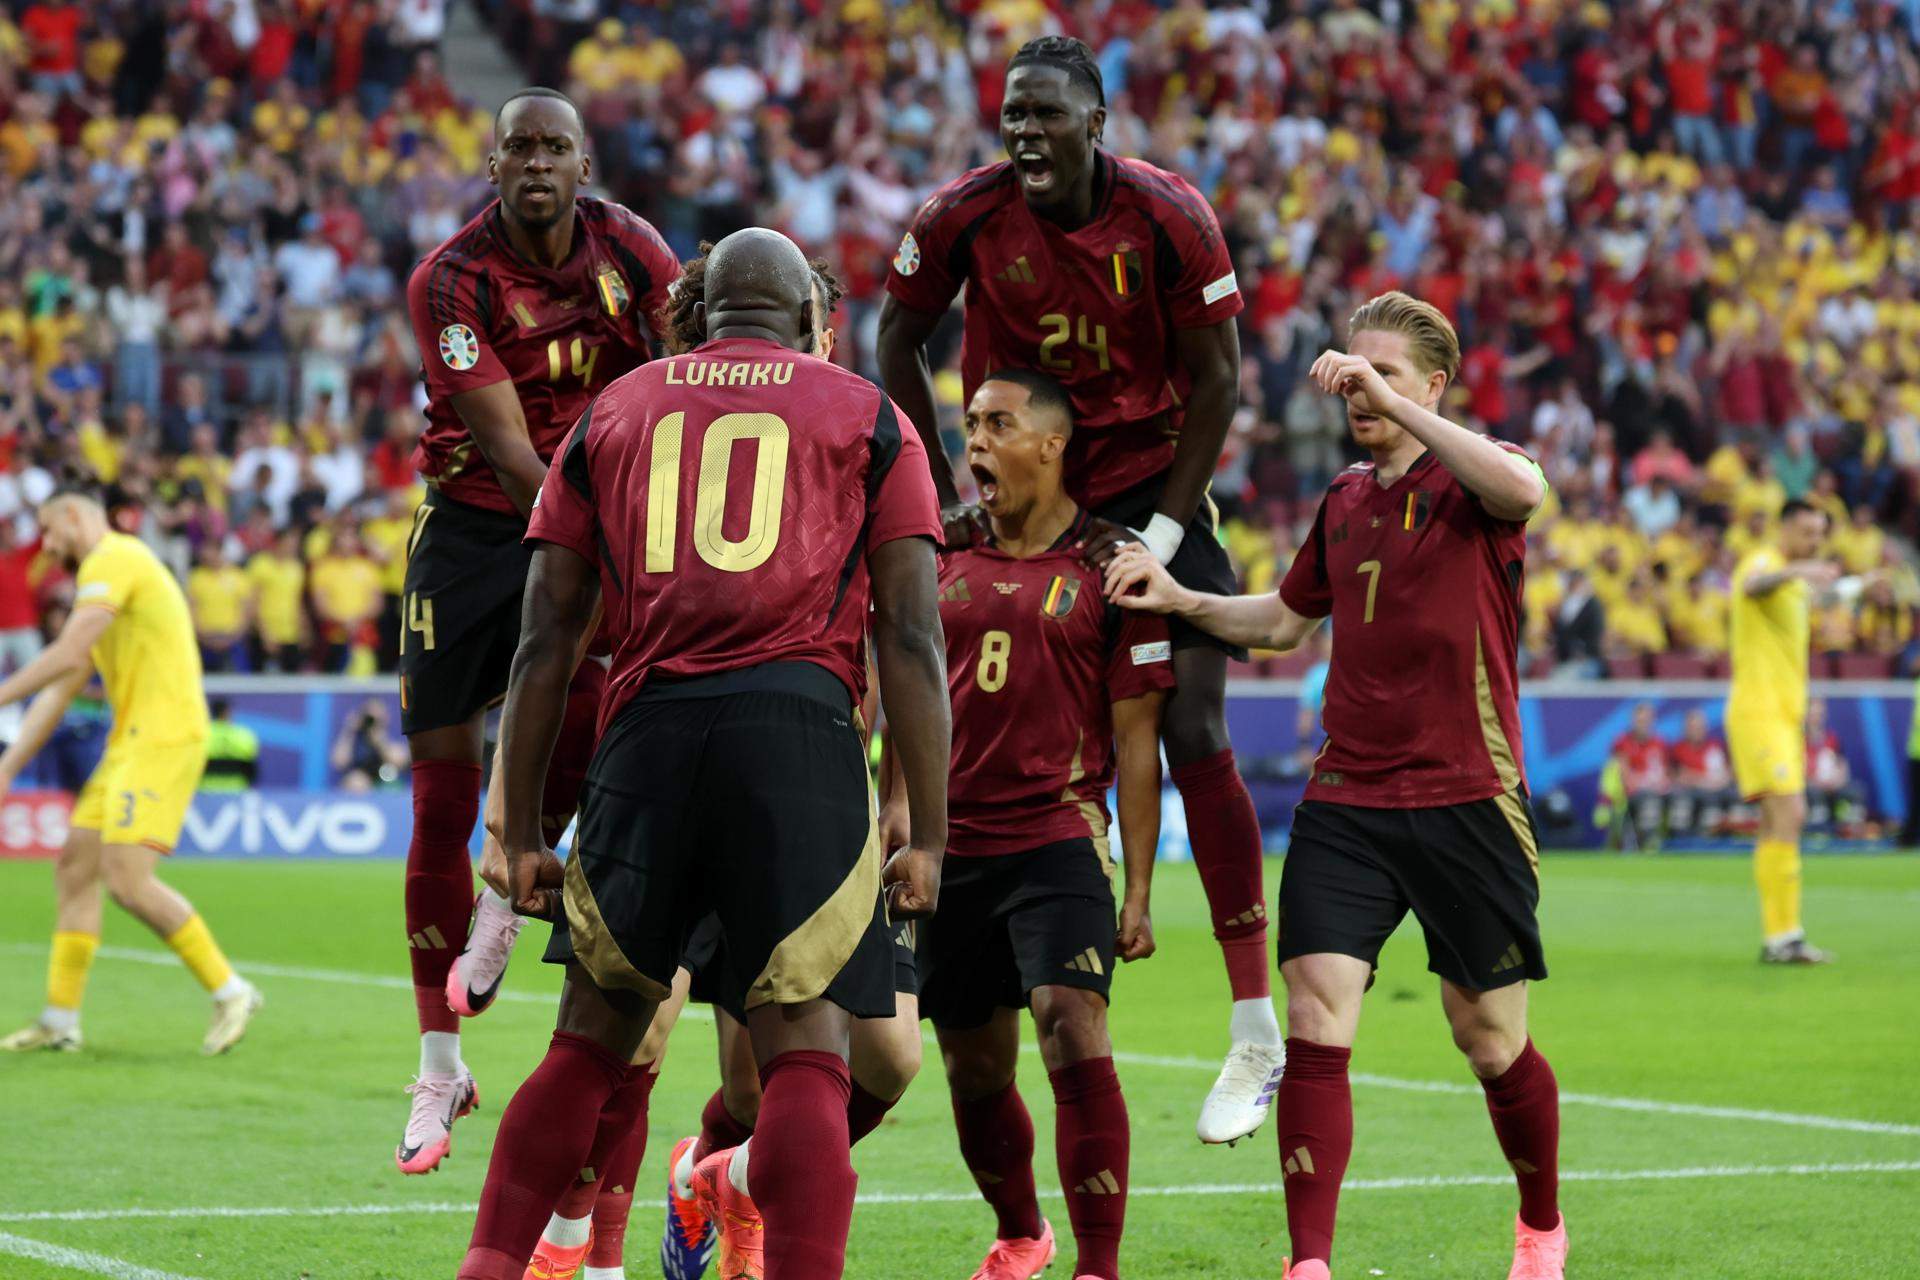 Bèlgica salva el seu primer 'match ball' amb una victòria davant de Romania en un partit apassionant (2-0)